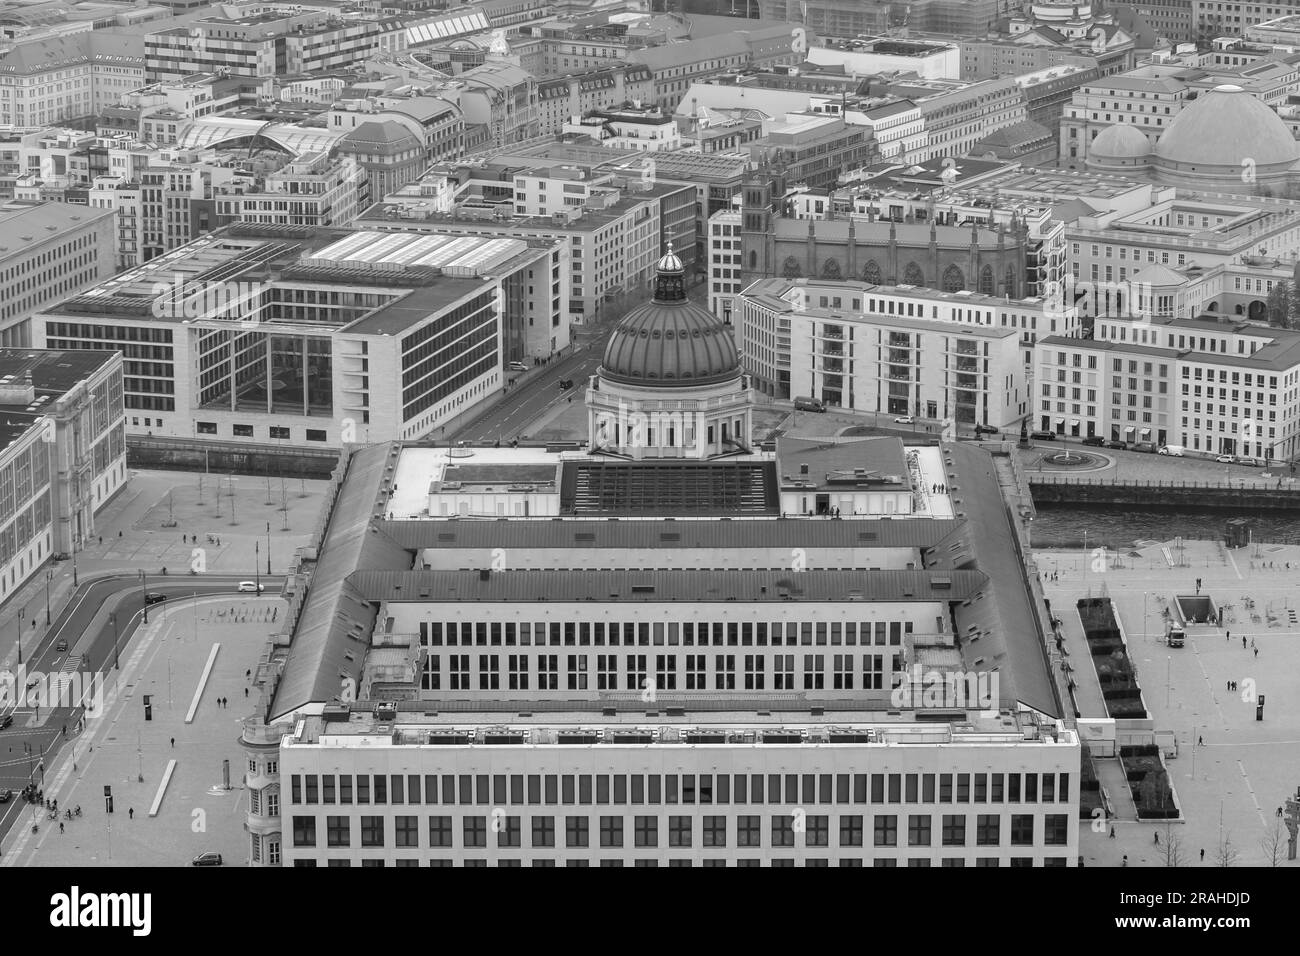 Vue aérienne panoramique du Palais de Berlin dans le centre de Berlin Allemagne Banque D'Images